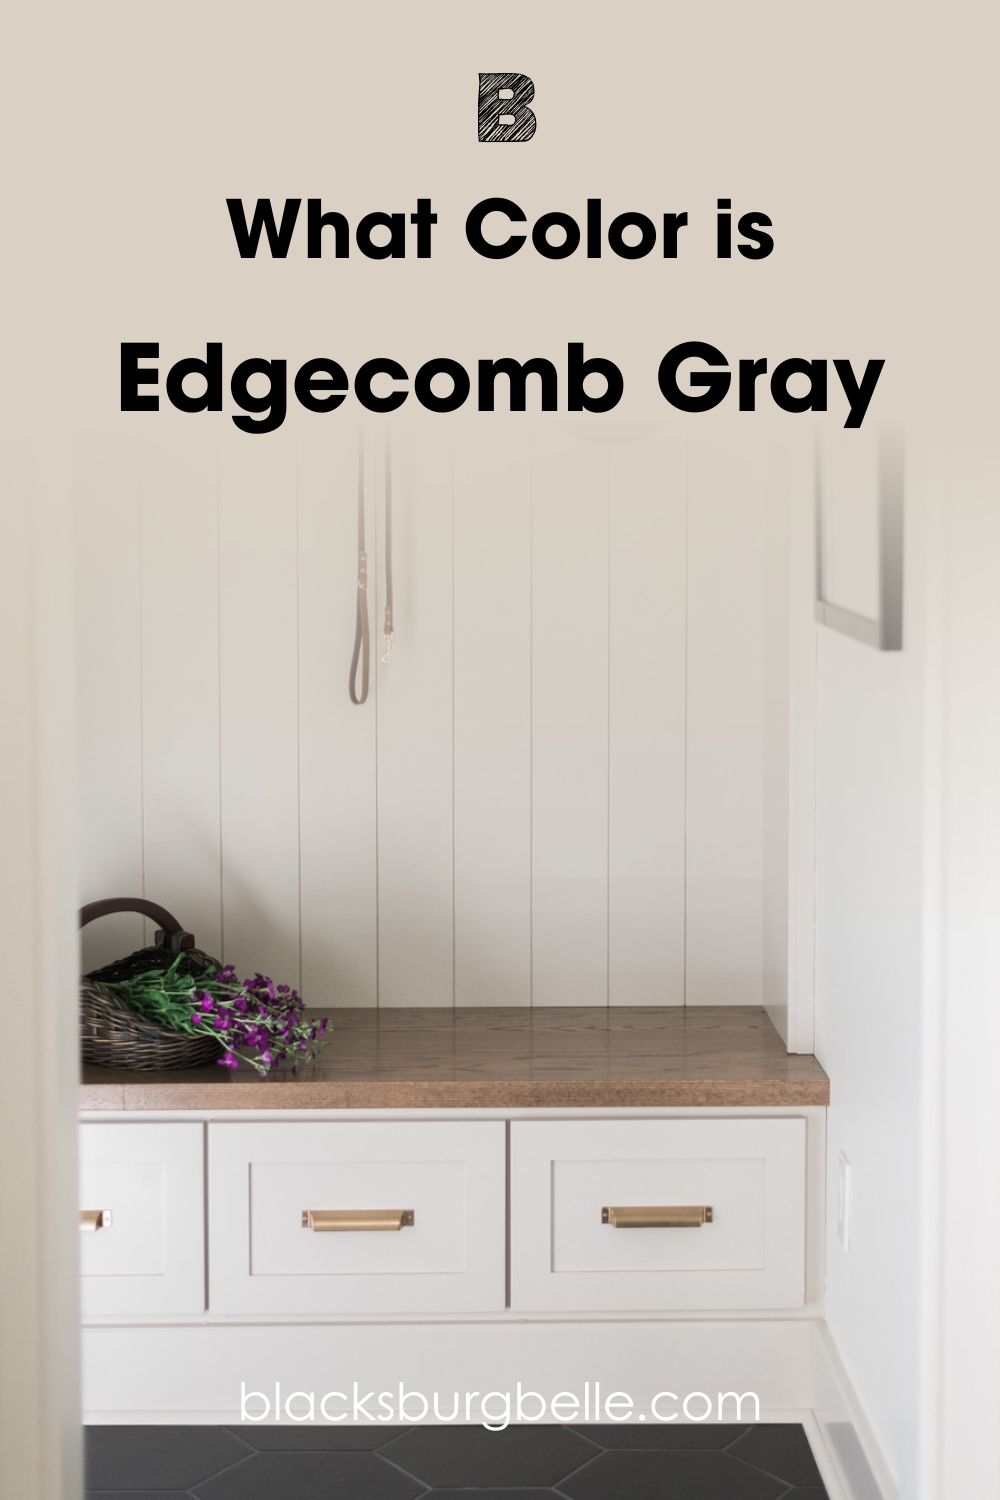 Edgecomb Gray(EG)